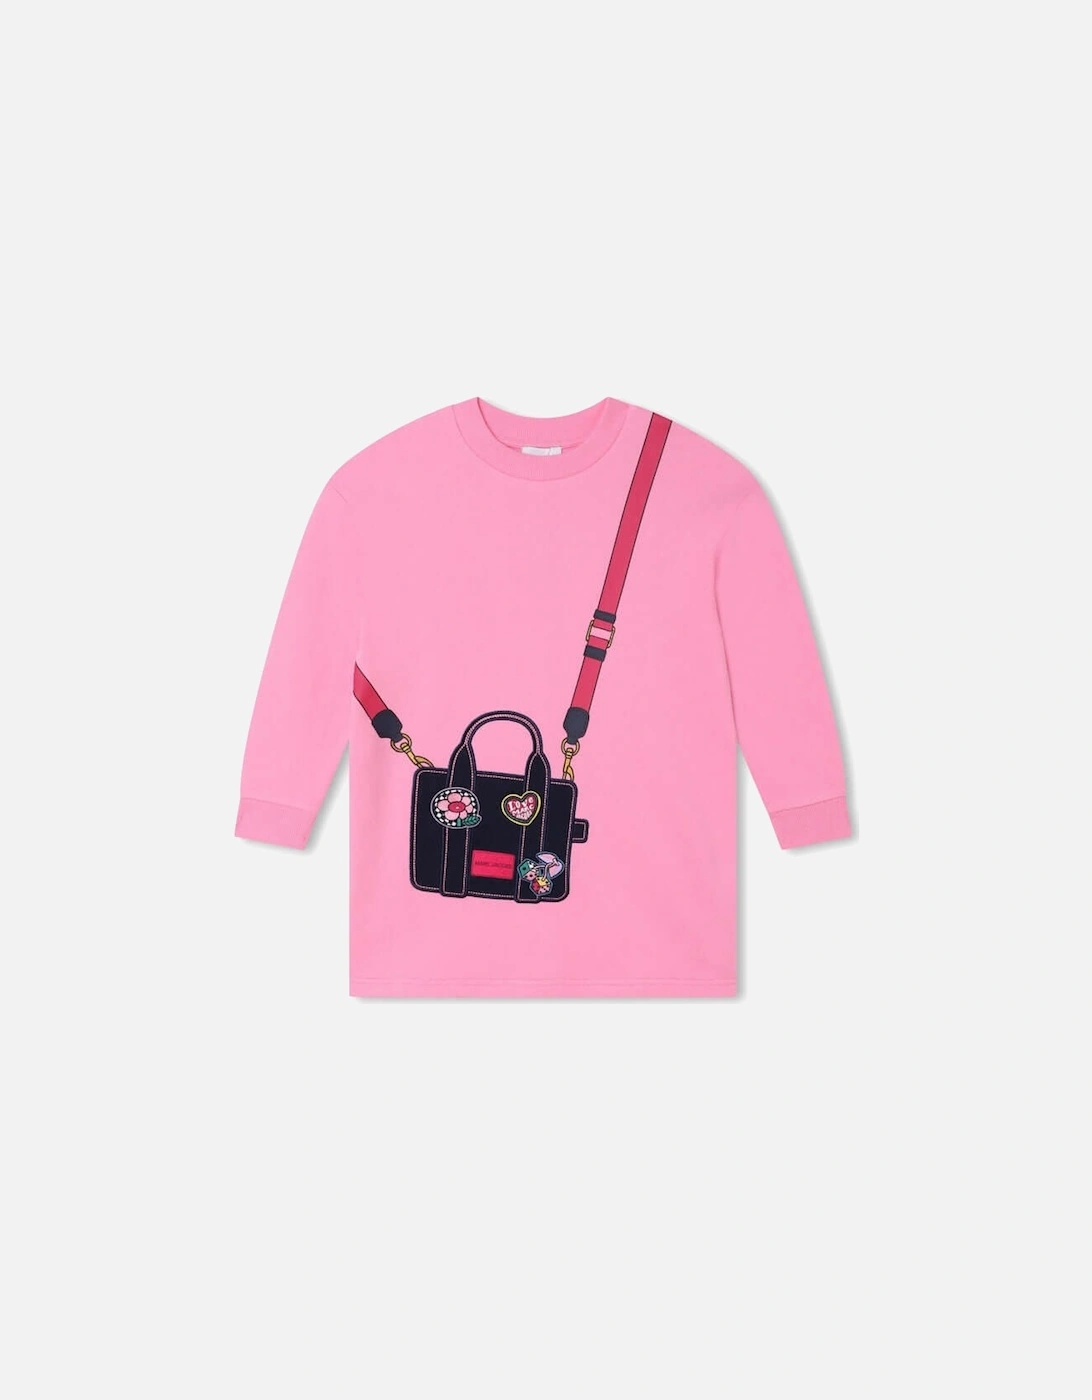 Girls Pink Tote Bag Sweatshirt Dress, 4 of 3